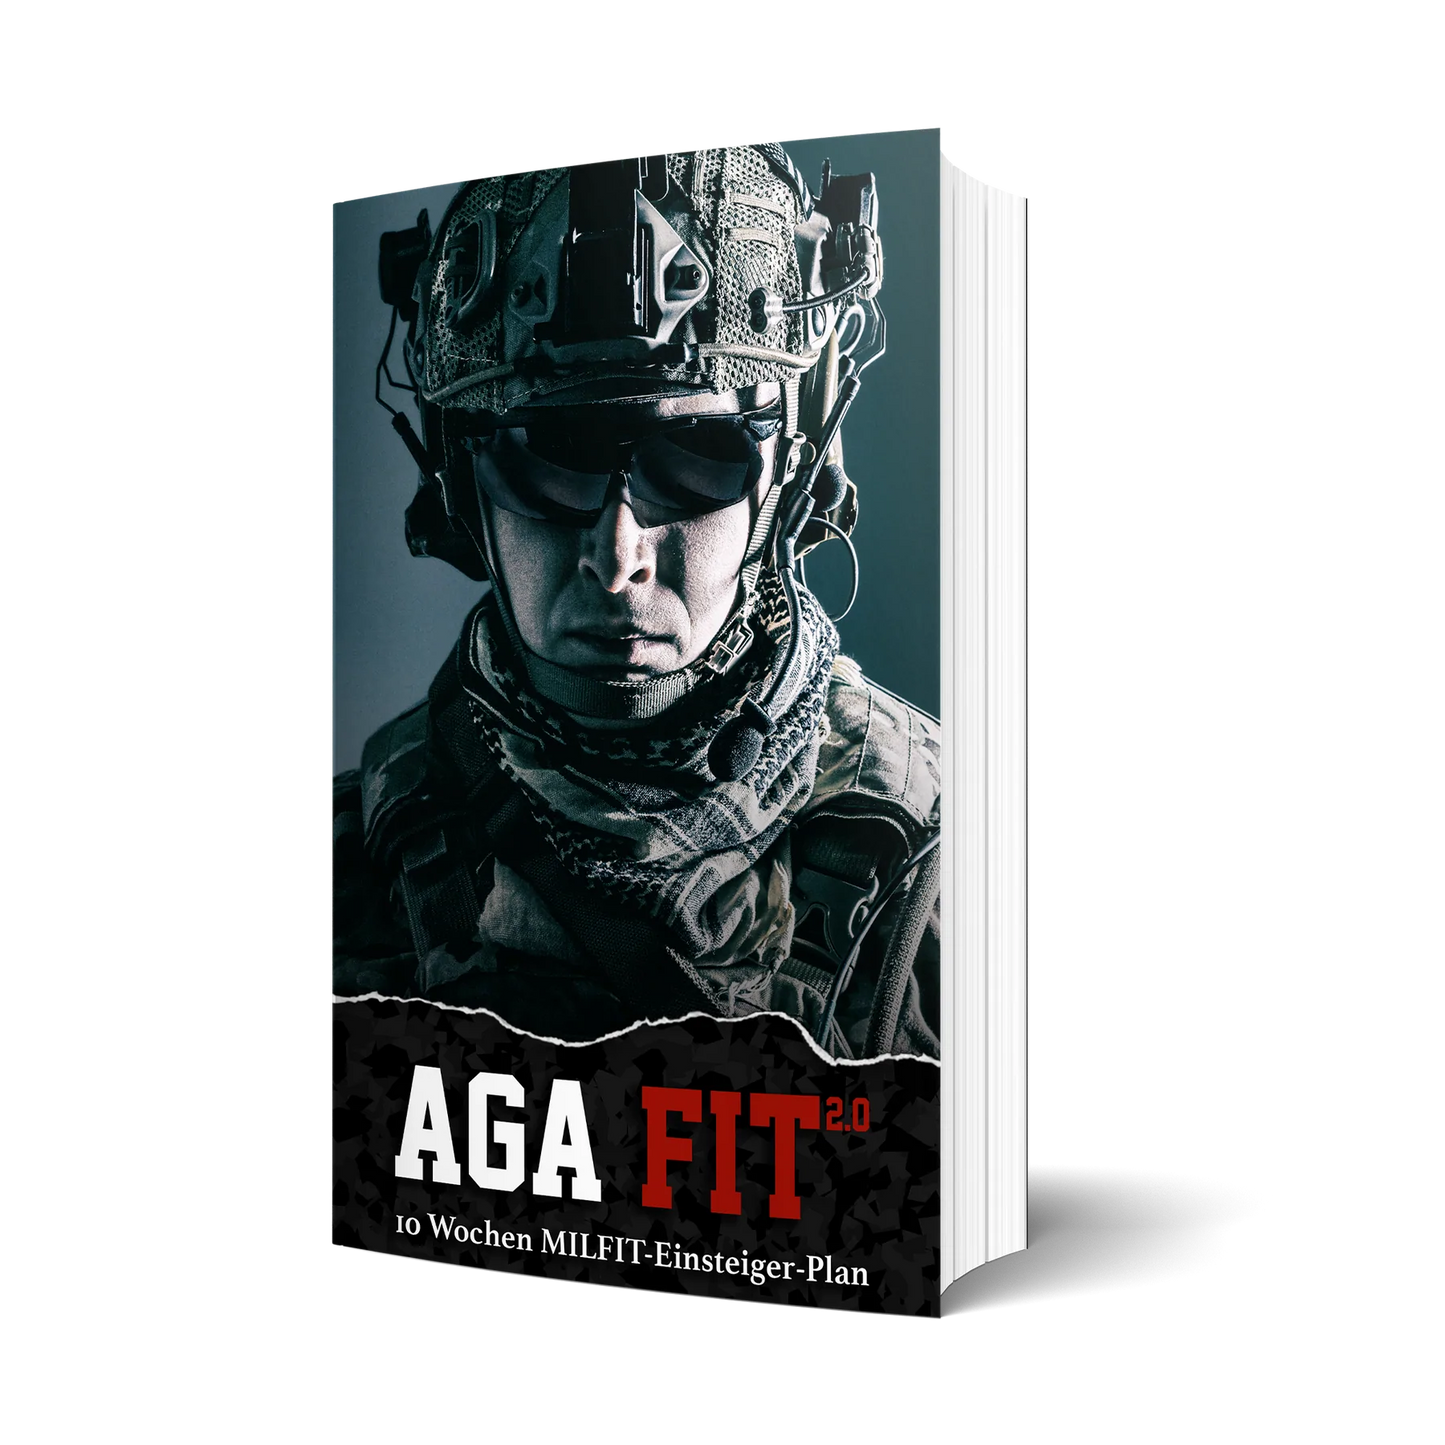 תוכנית אימונים/תוכנית כושר/ספר אימונים צבאי 10 שבועות AGA Fit 2.0